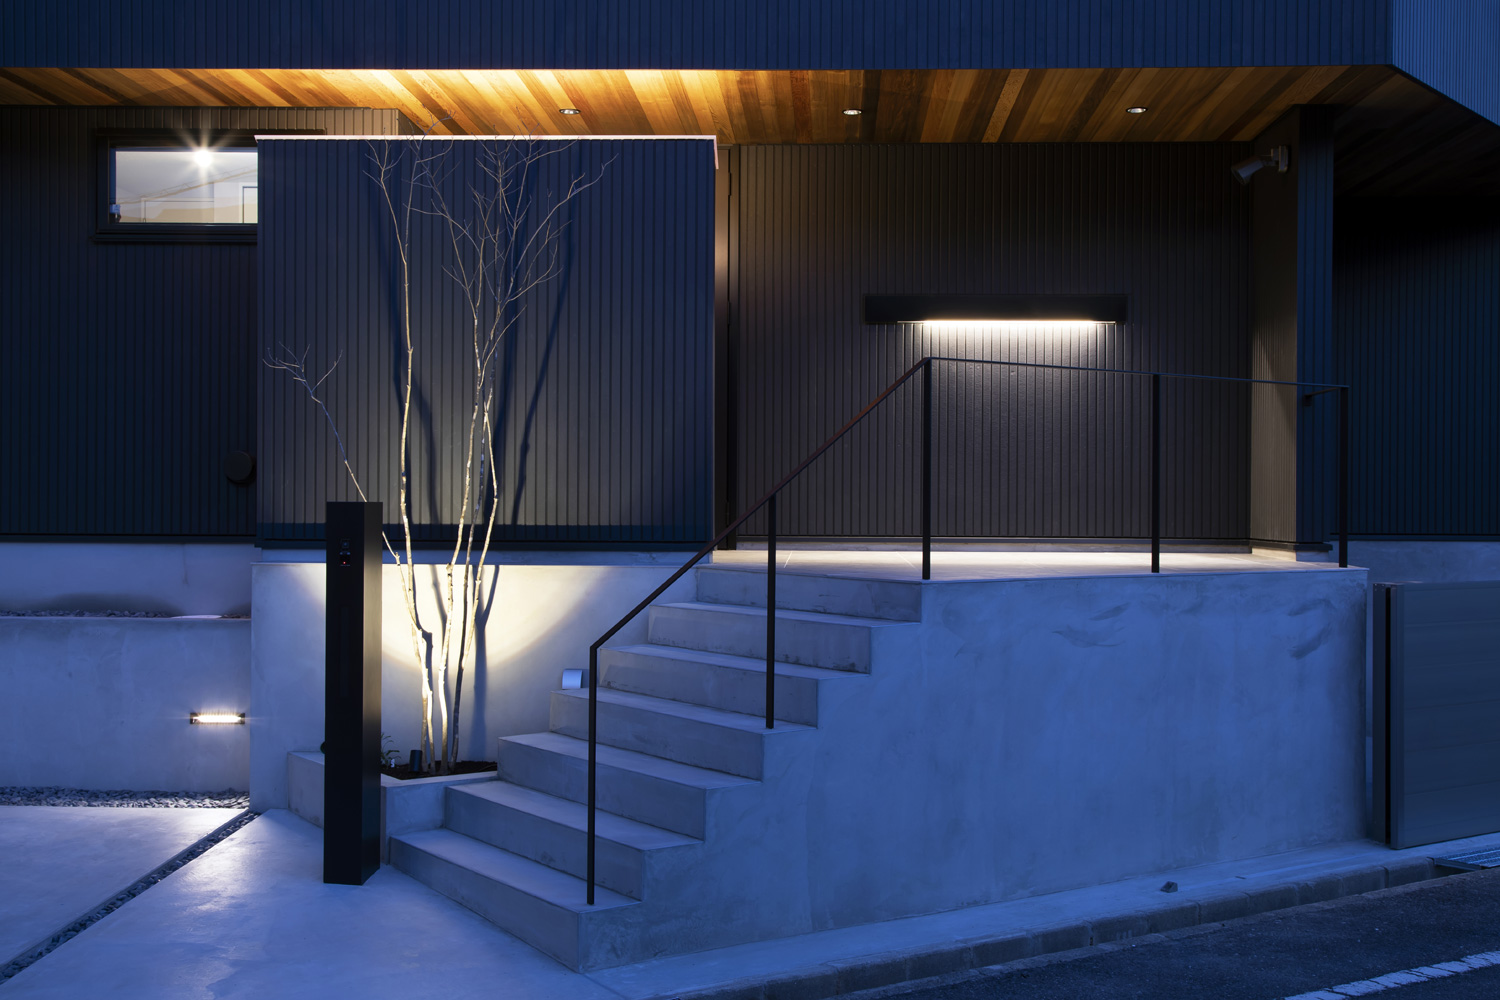 コンクリートの階段アプローチのそばにある木や玄関ポーチが照明に照らされた住宅の外観・デザイン住宅